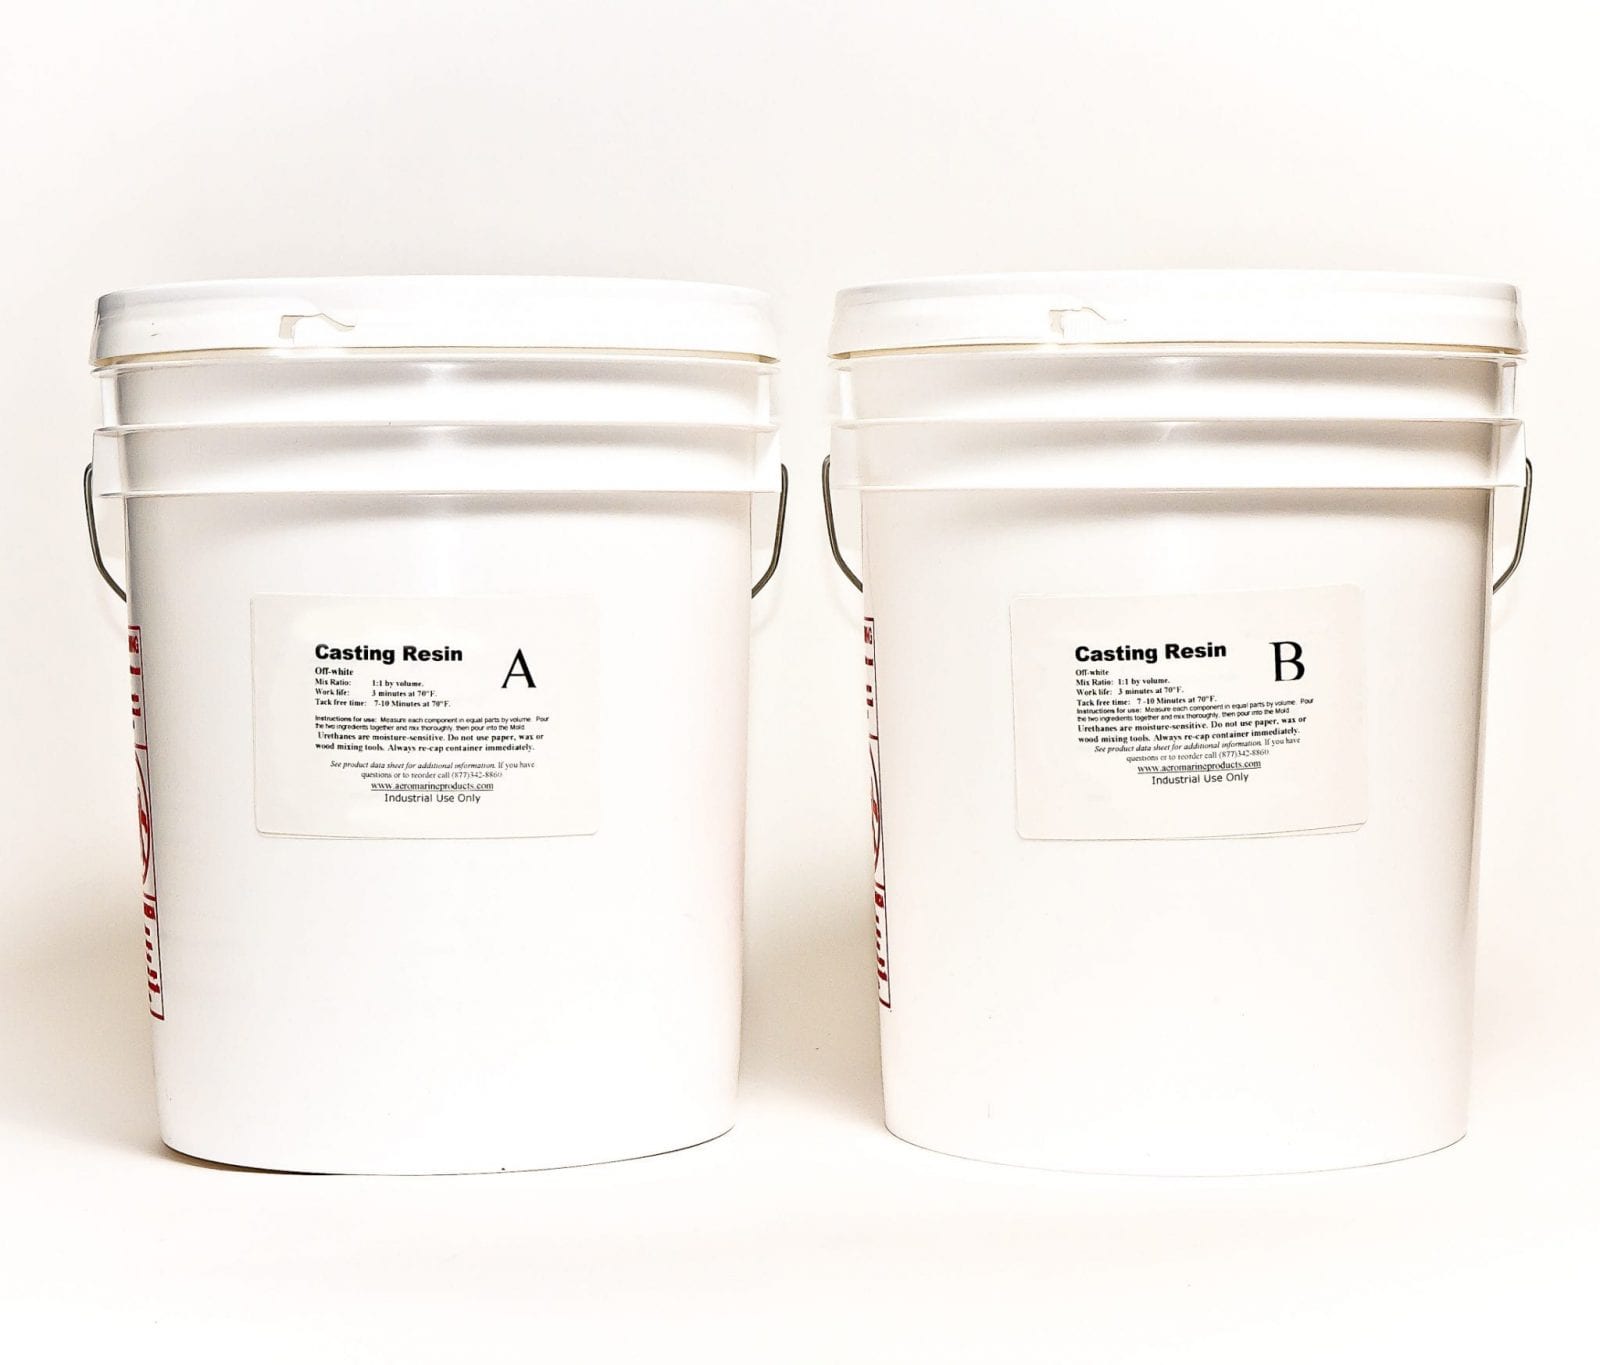 White Casting Resin – 10 Gallon Kit